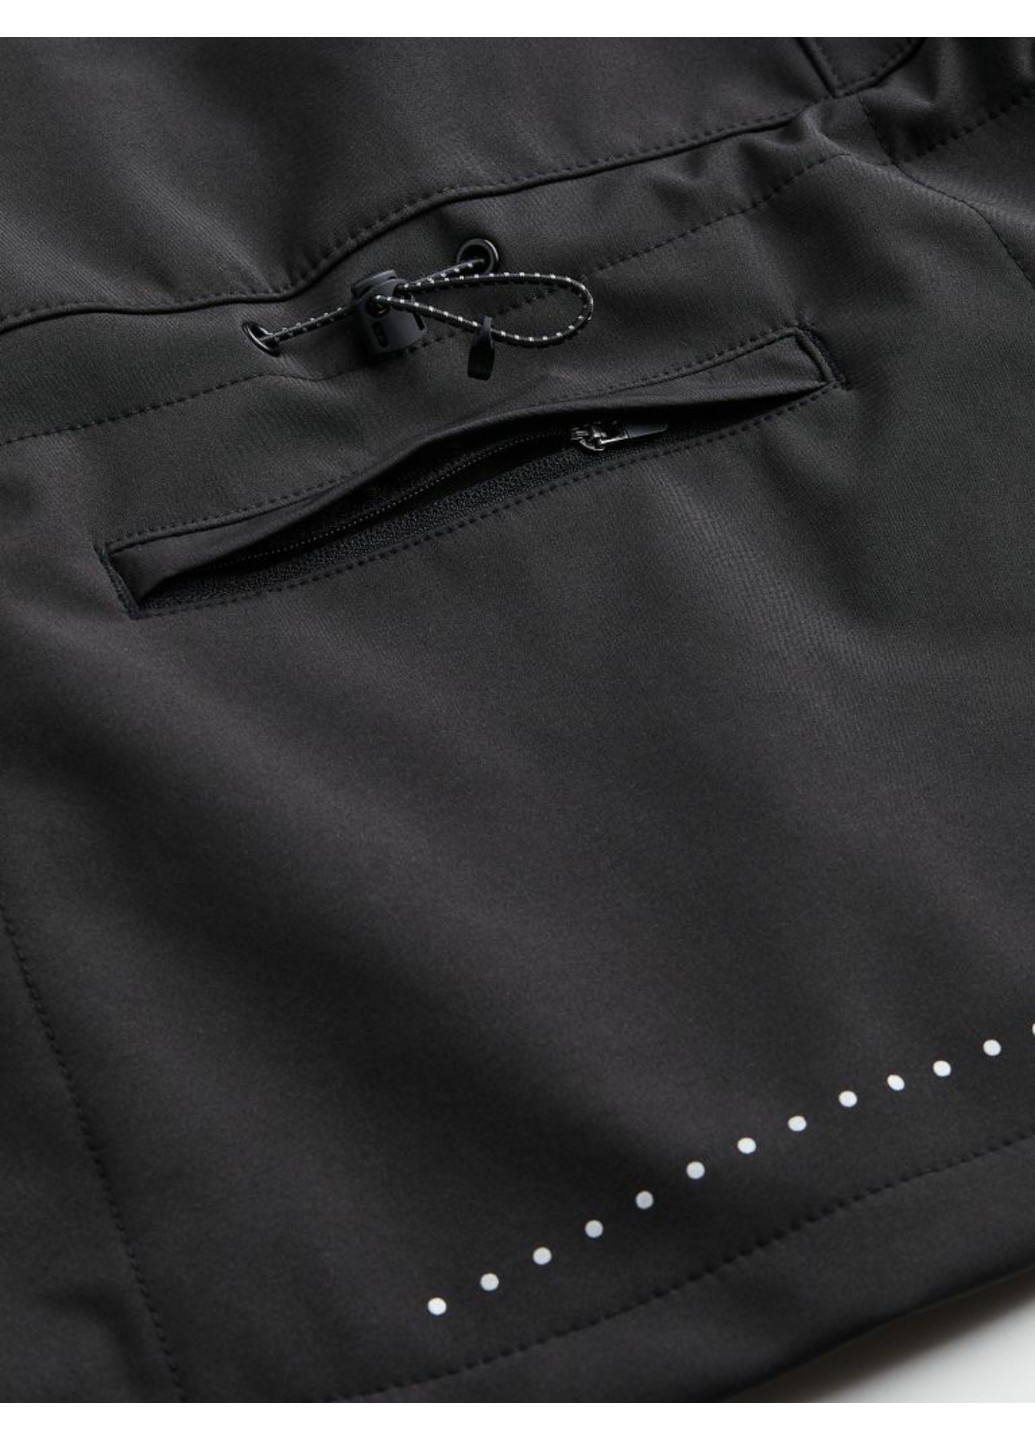 Чорна демісезонна жіноча вітрозахисна куртка н&м (56093) xs чорна H&M